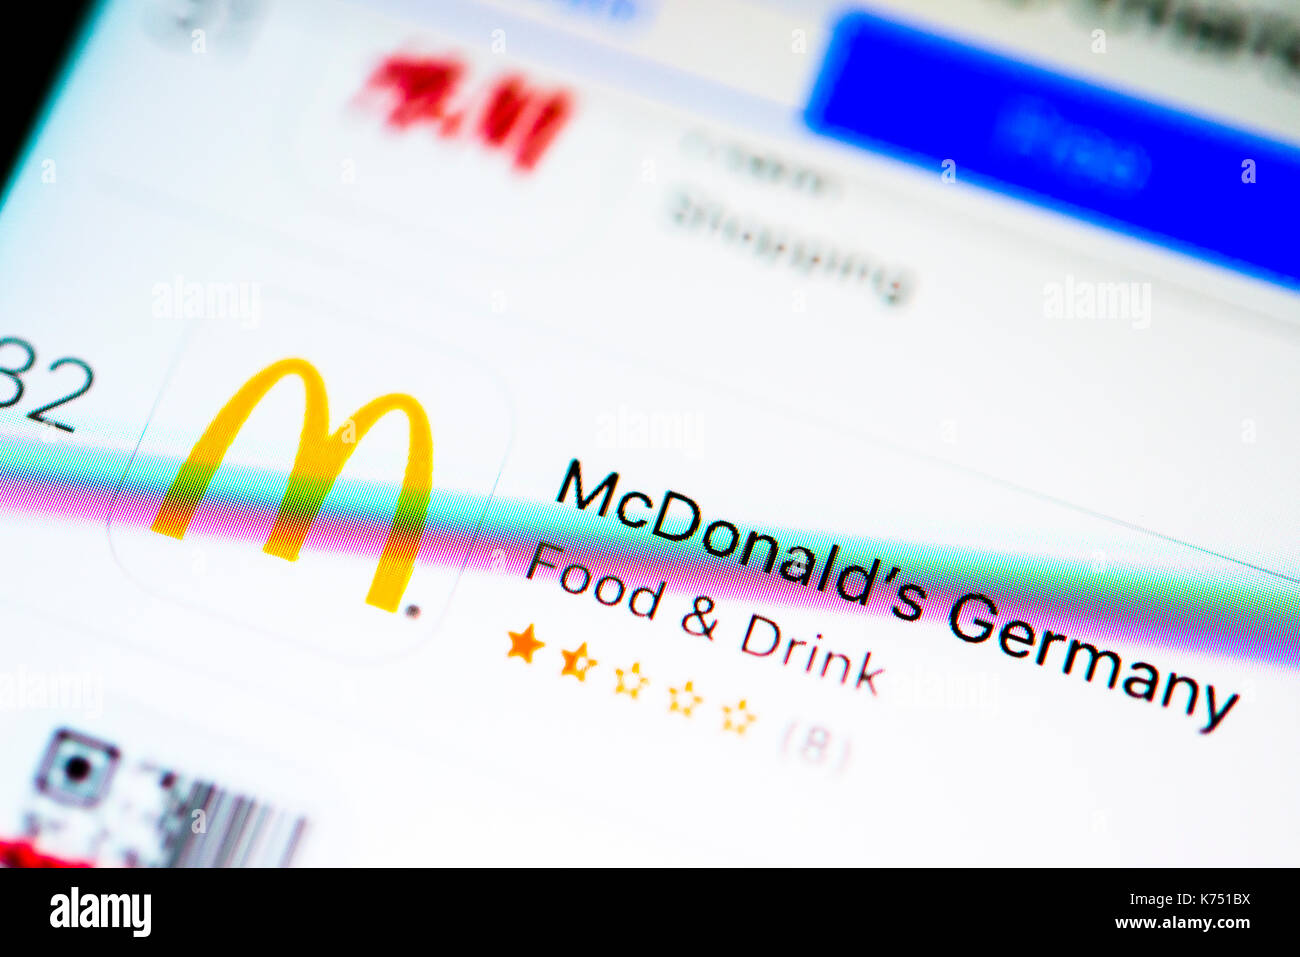 McDonald's App im Apple App Store, Anzeige auf einem Bildschirm eines Mobiltelefons, iPhone, iOS, Smartphone, Makroaufzeichnung, Details Stockfoto